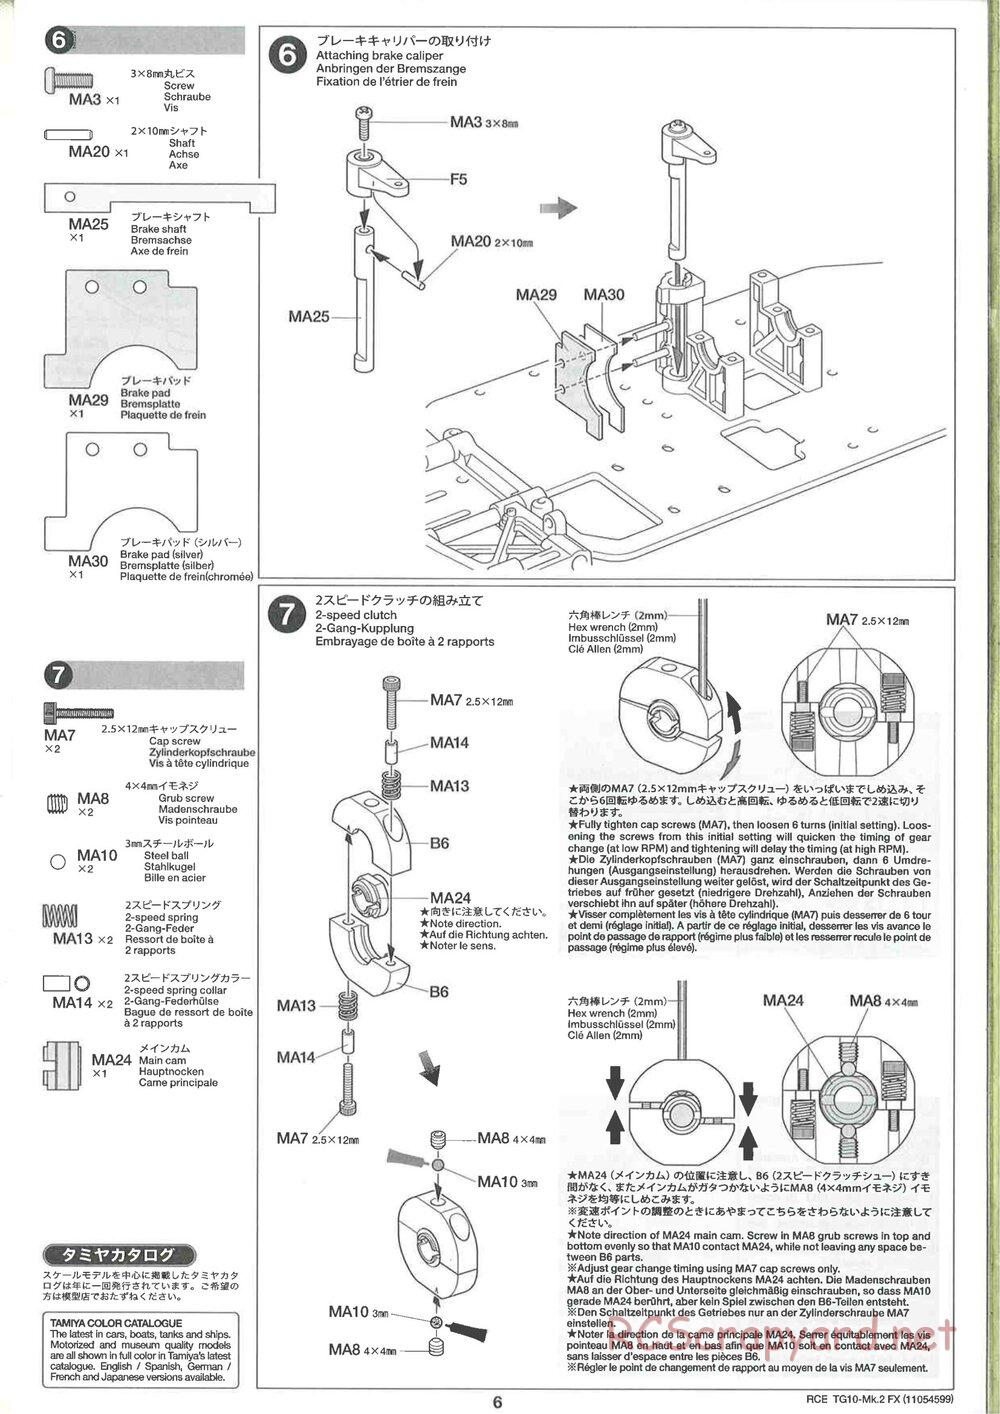 Tamiya - TG10 Mk.2 FX Chassis - Manual - Page 6